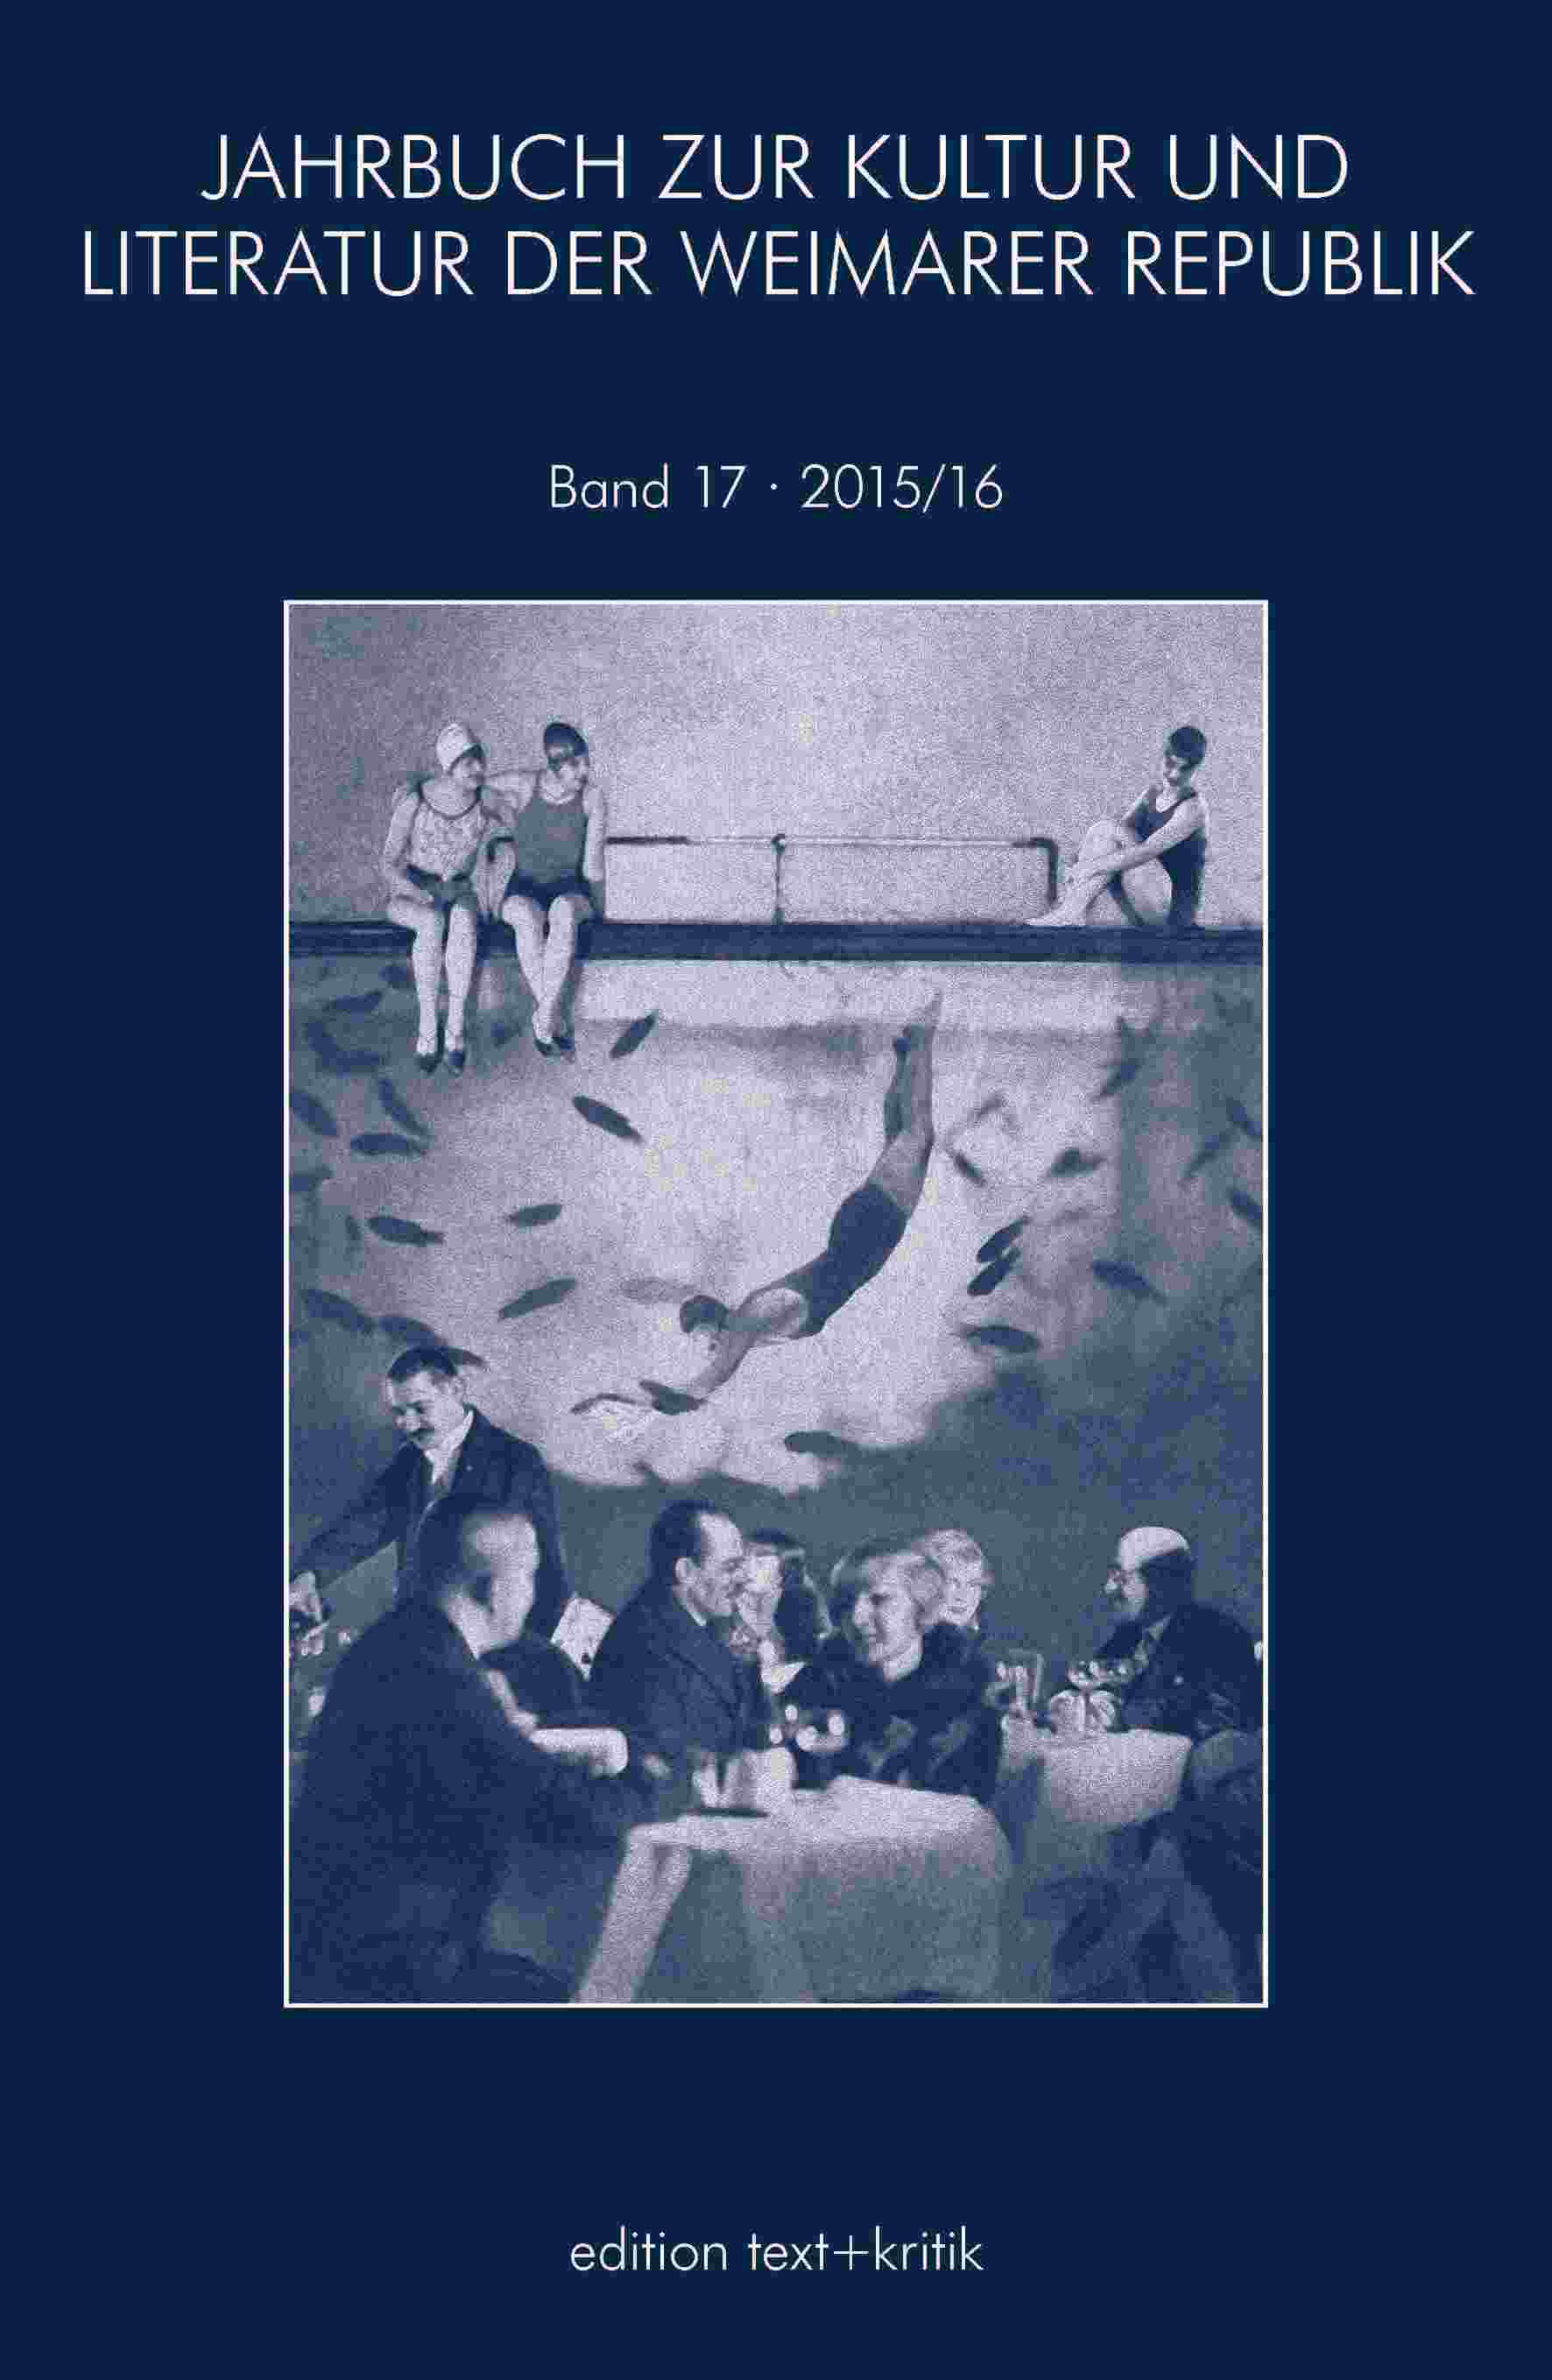 Jahrbuch zur Kultur und Literatur der Weimarer Republik Bd.17 2015/16). (Hrsg. von Sabina Becker in Zusammenarbiet mit Robert Krause).